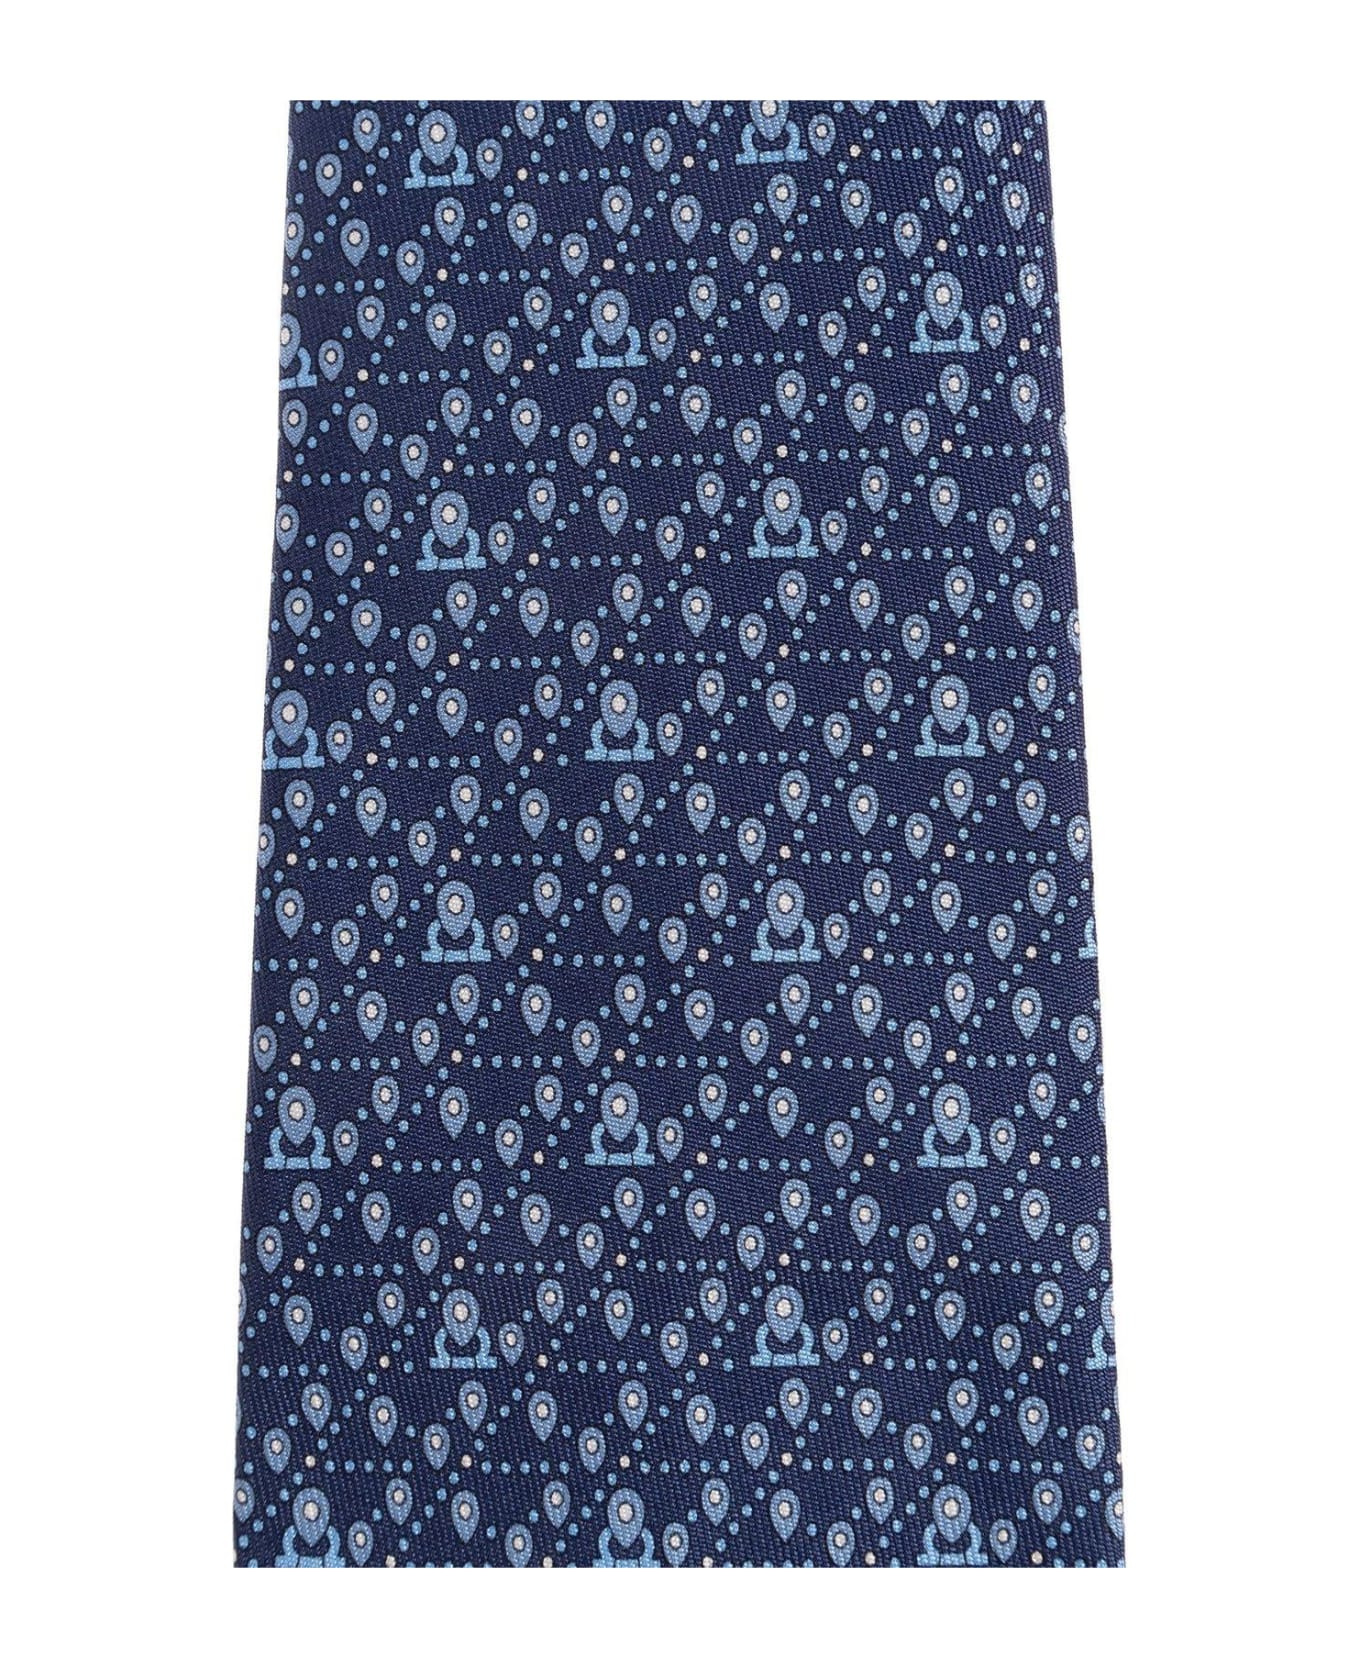 Ferragamo Tag Printed Tie - Navy